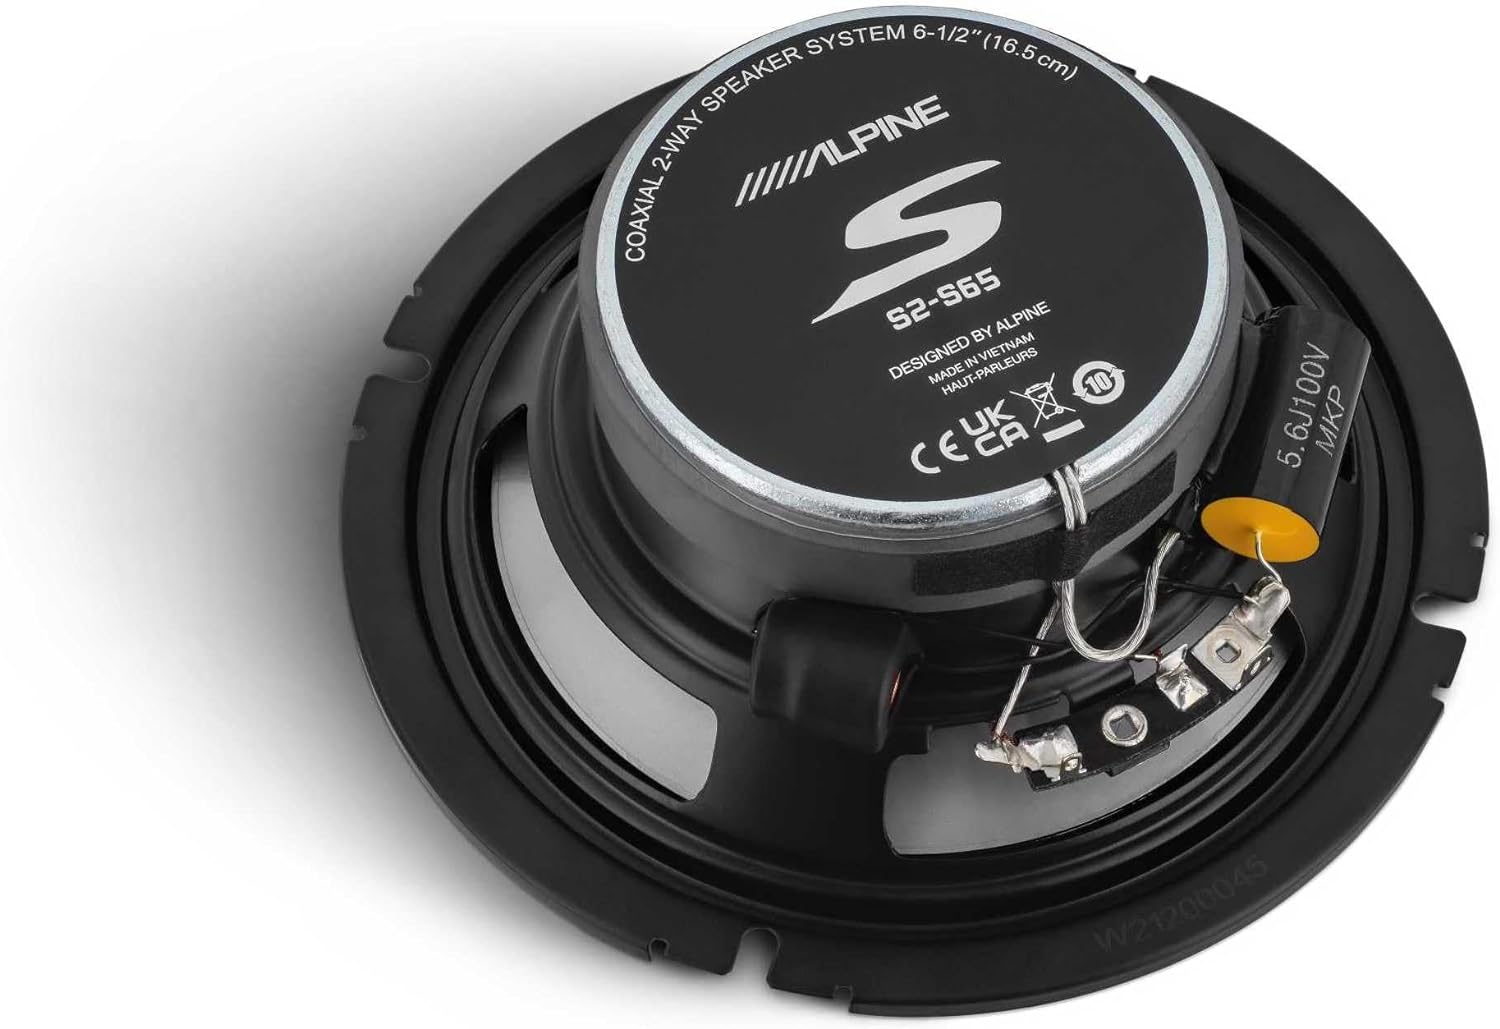 Alpine UTE-73BT In-Dash Digital Media Receiver Bluetooth & S2-S65C 6.5" Component & S2-S65 6.5" Speakers